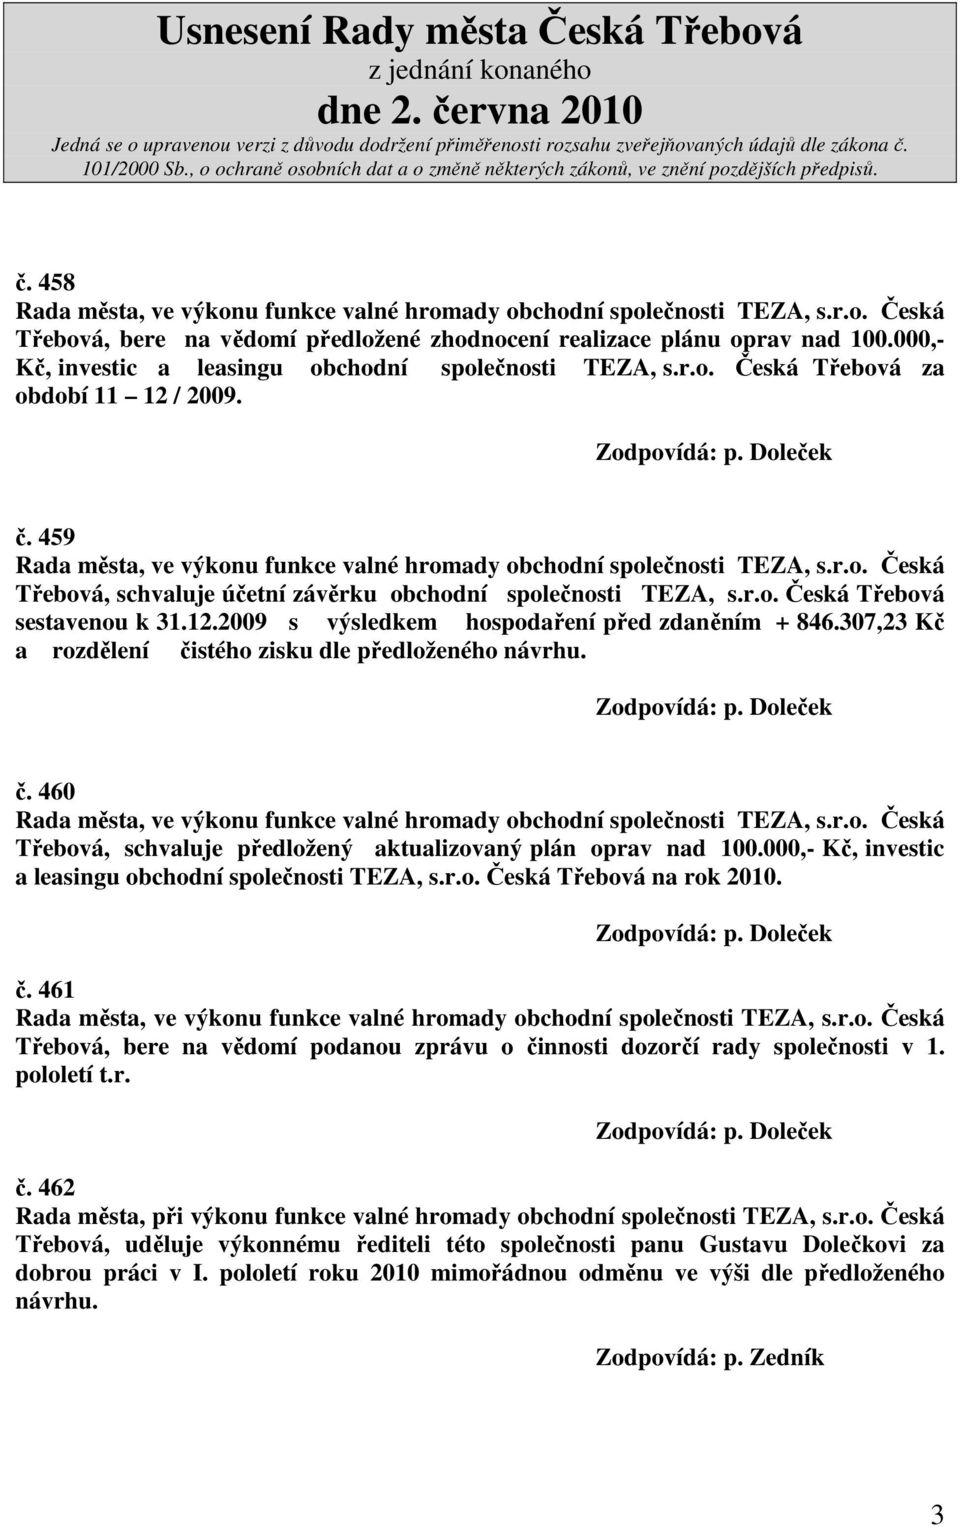 307,23 Kč a rozdělení čistého zisku dle předloženého návrhu. č. 460 Třebová, schvaluje předložený aktualizovaný plán oprav nad 100.000,- Kč, investic a leasingu obchodní společnosti TEZA, s.r.o. Česká Třebová na rok 2010.